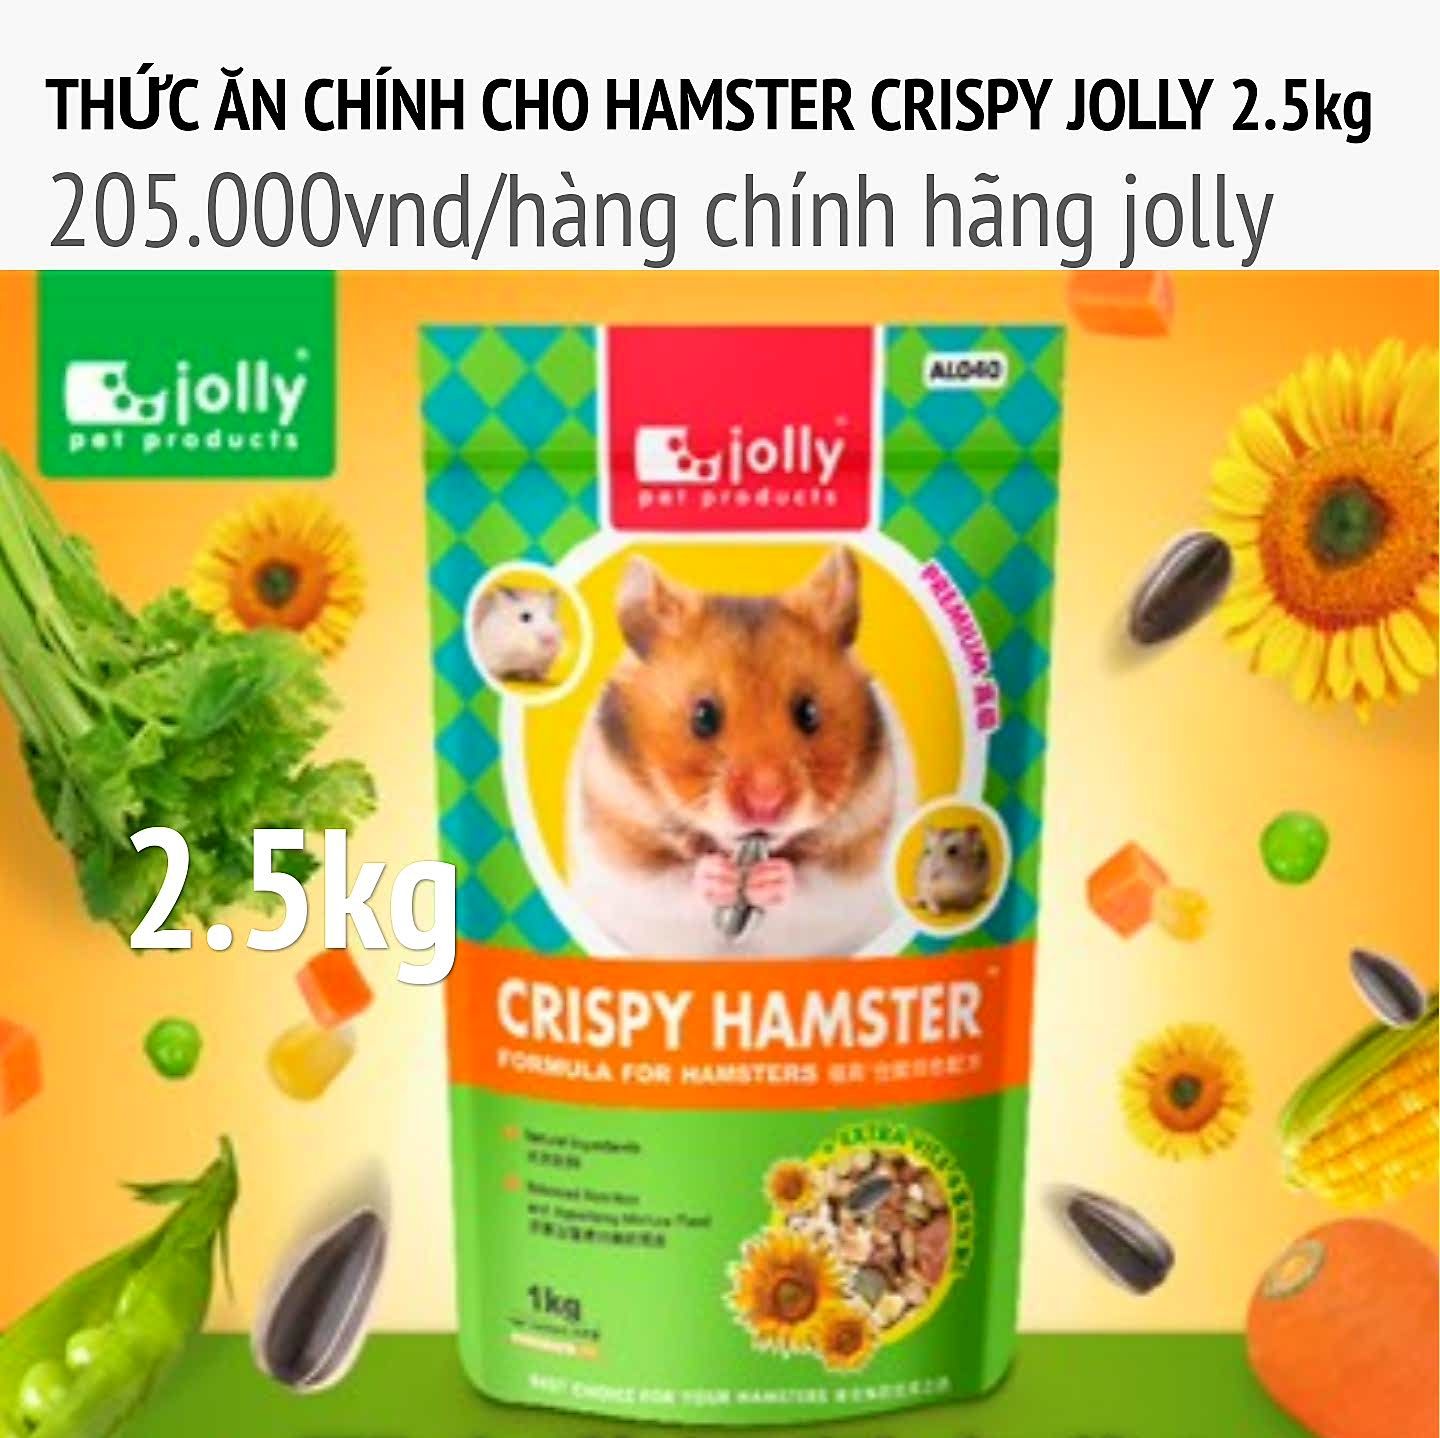 THỨC ĂN CHÍNH CHO HAMSTER CRISPY 2,5KG